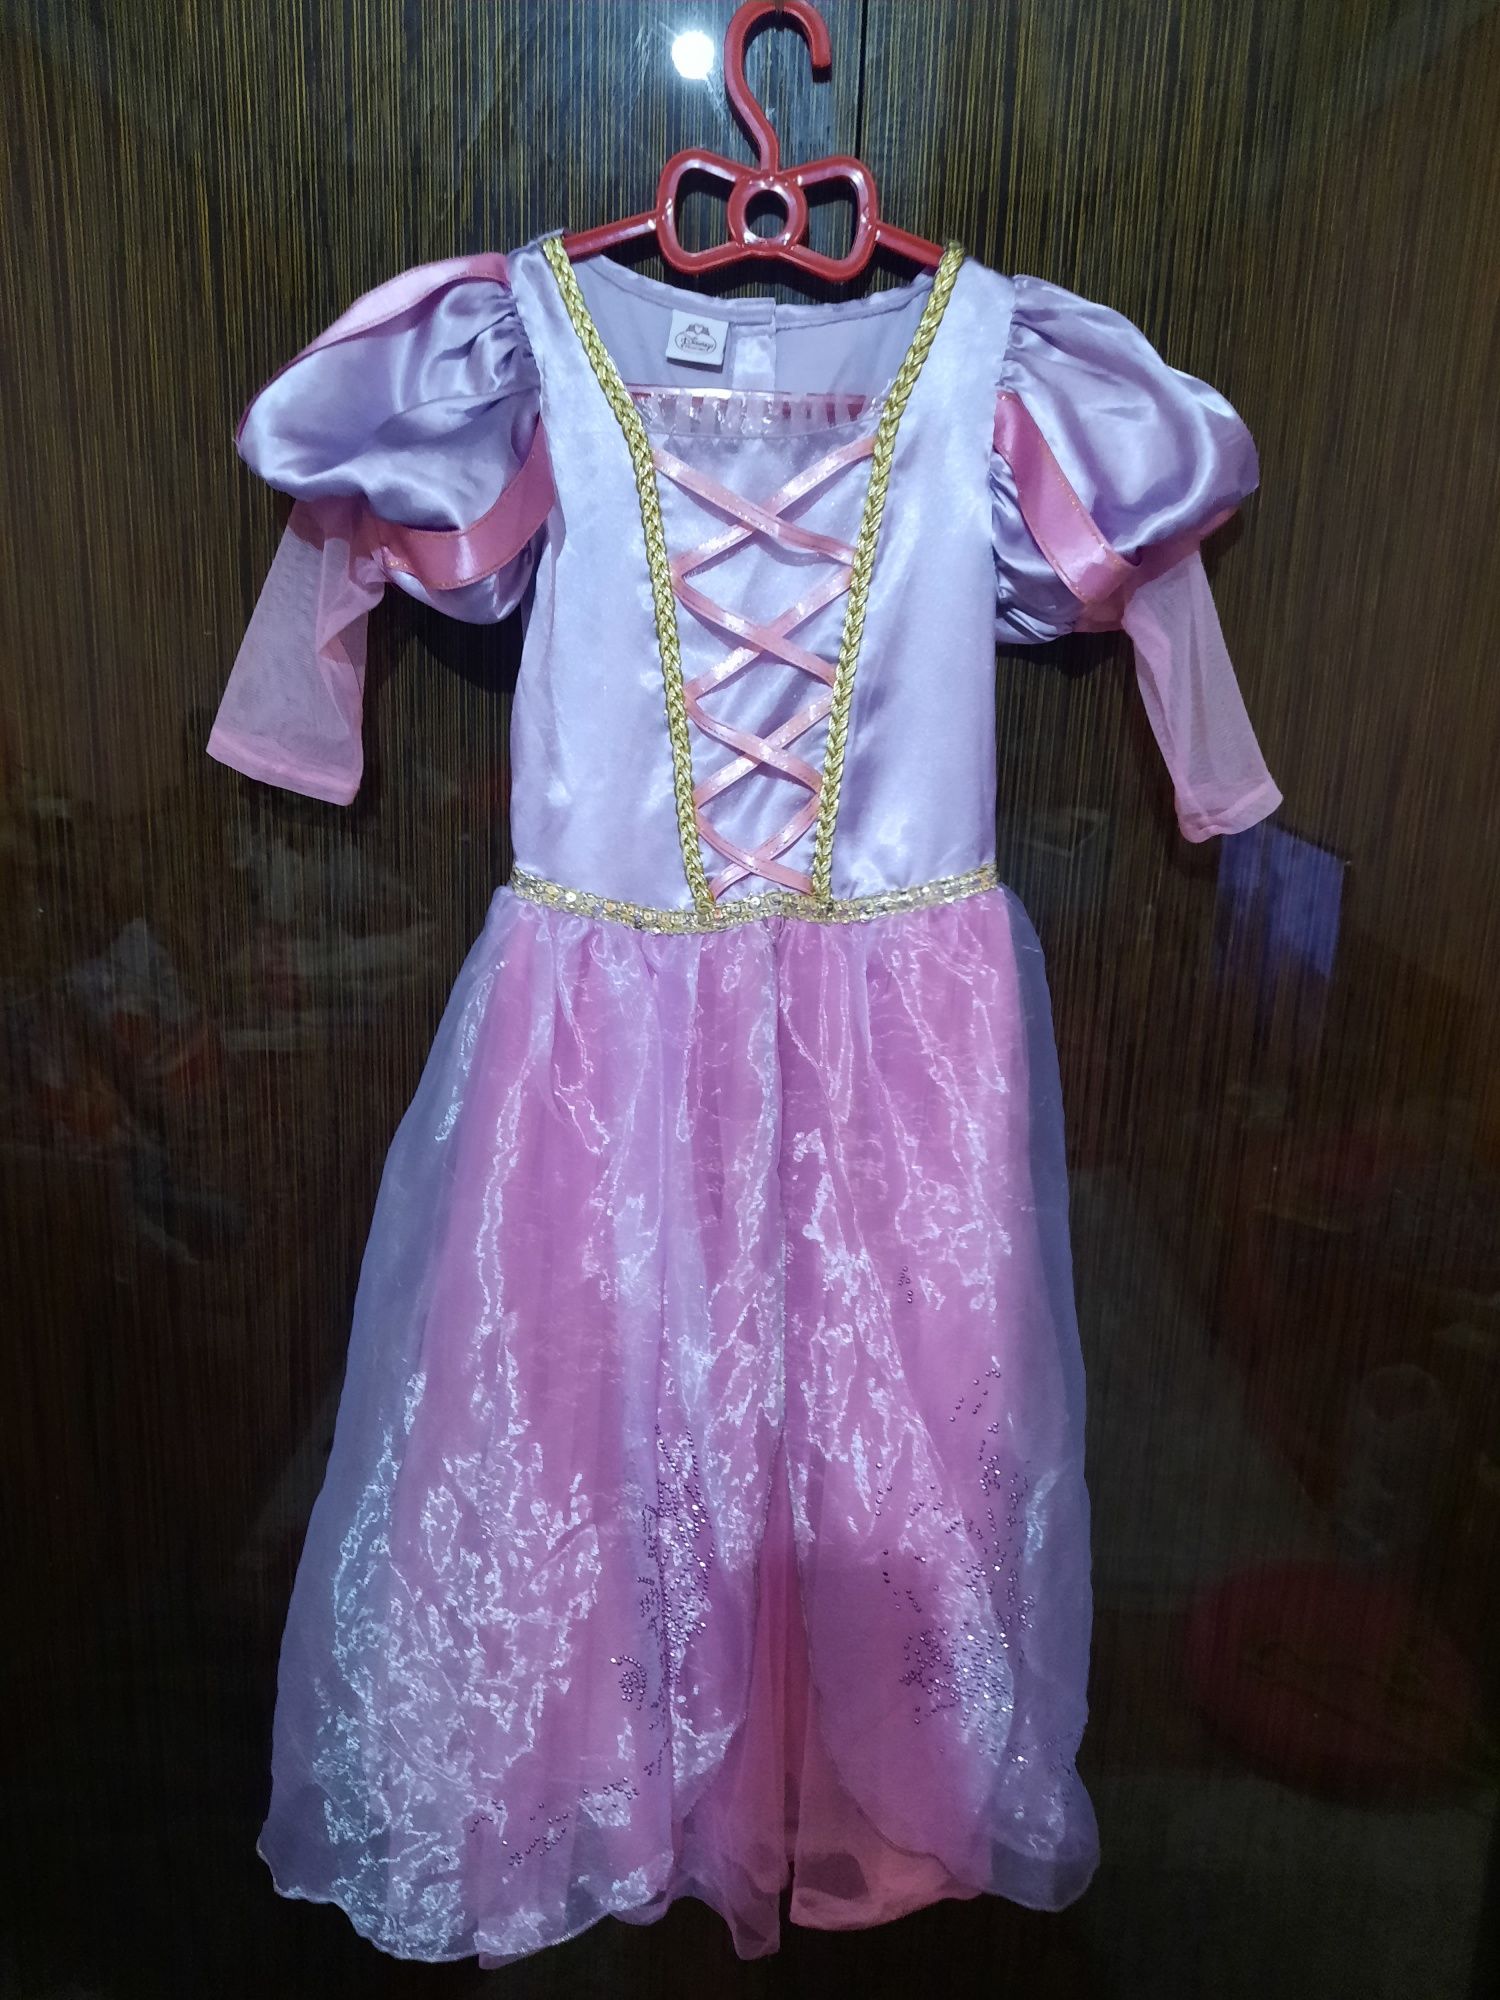 Фигурка Рапунцель в платье (Rapunzel Gown) из мультика Tangled — Funko POP